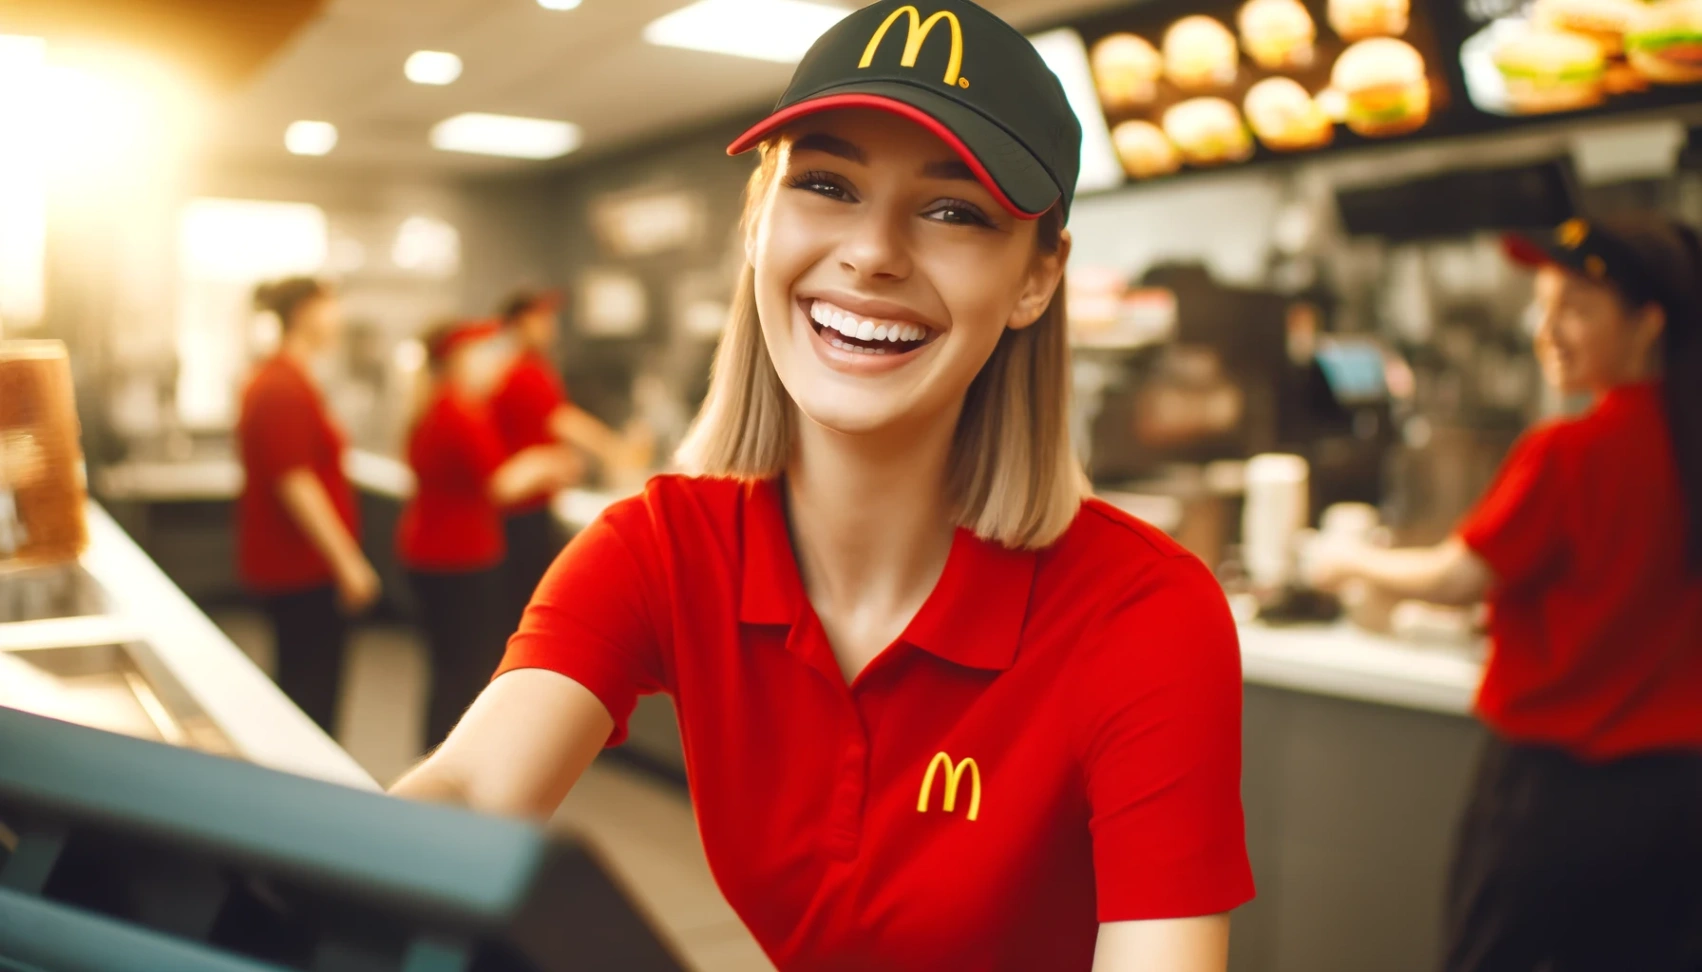 McDonald's töötaotlus: Sinu tee põnevasse tulevikku